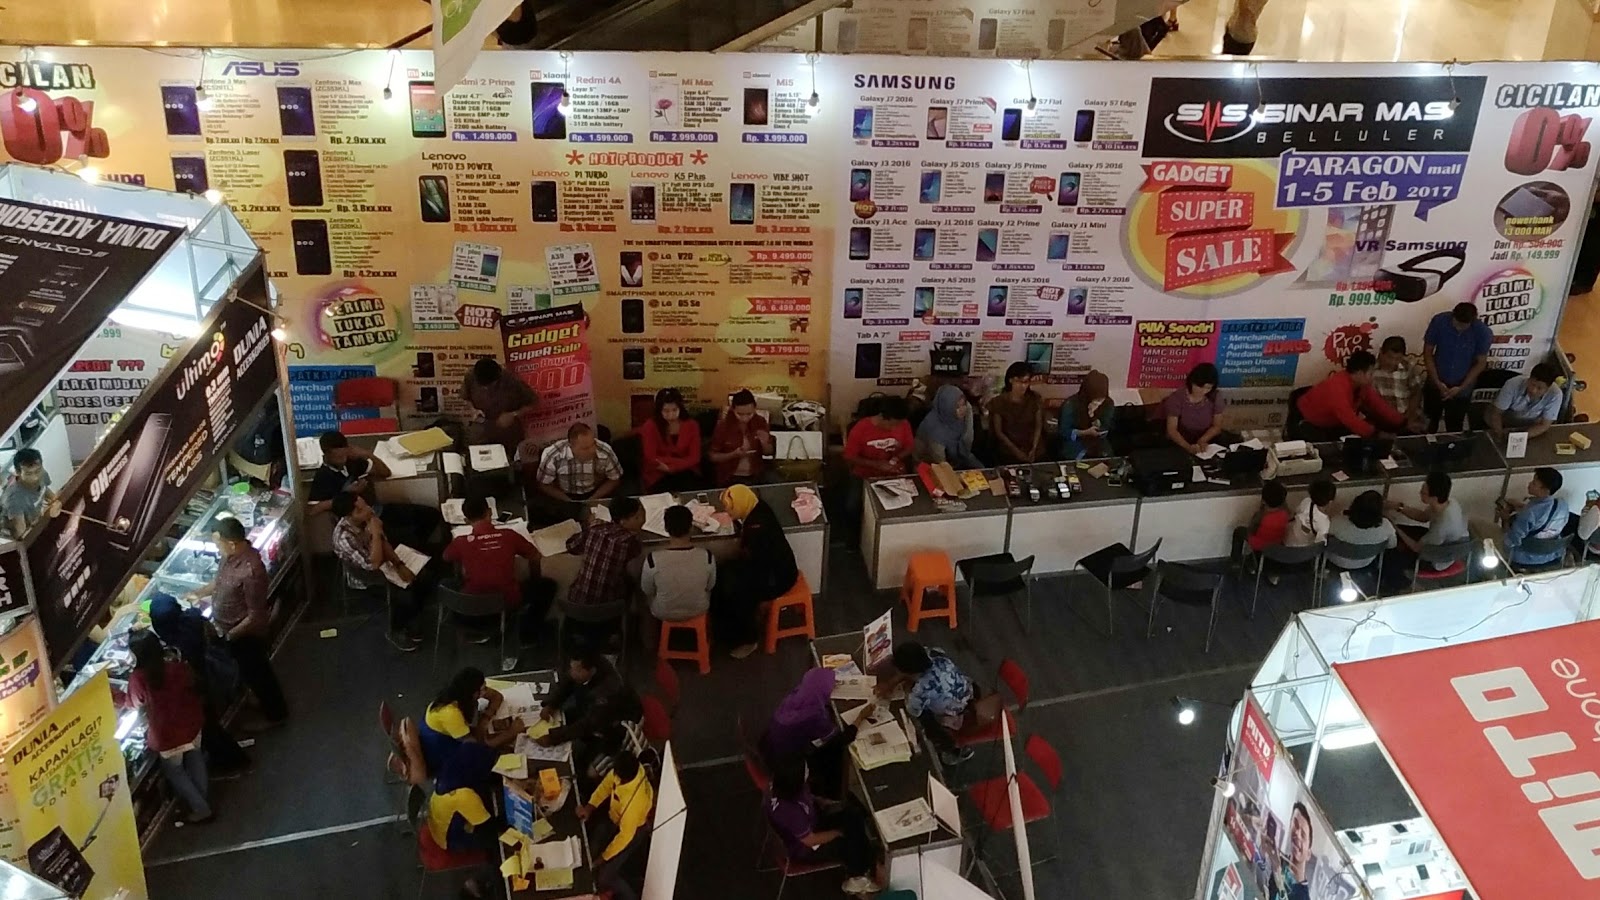 Daftar Harga Zenfone Asus Di Pameran Handphone Semarang 